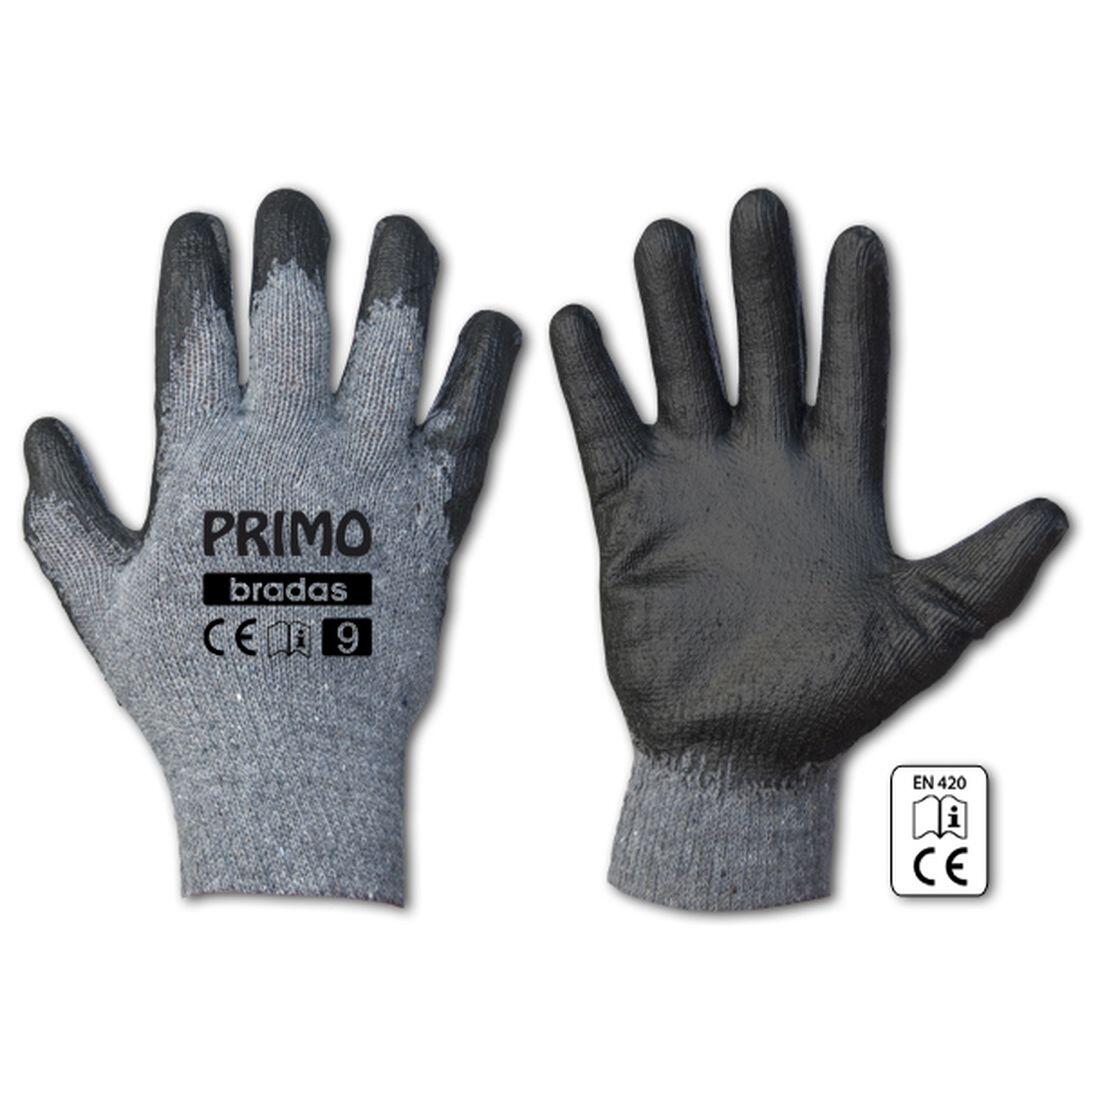 rukavice PRIMO latex 11 0.07 Kg MAXMIX Sklad14 715685 232